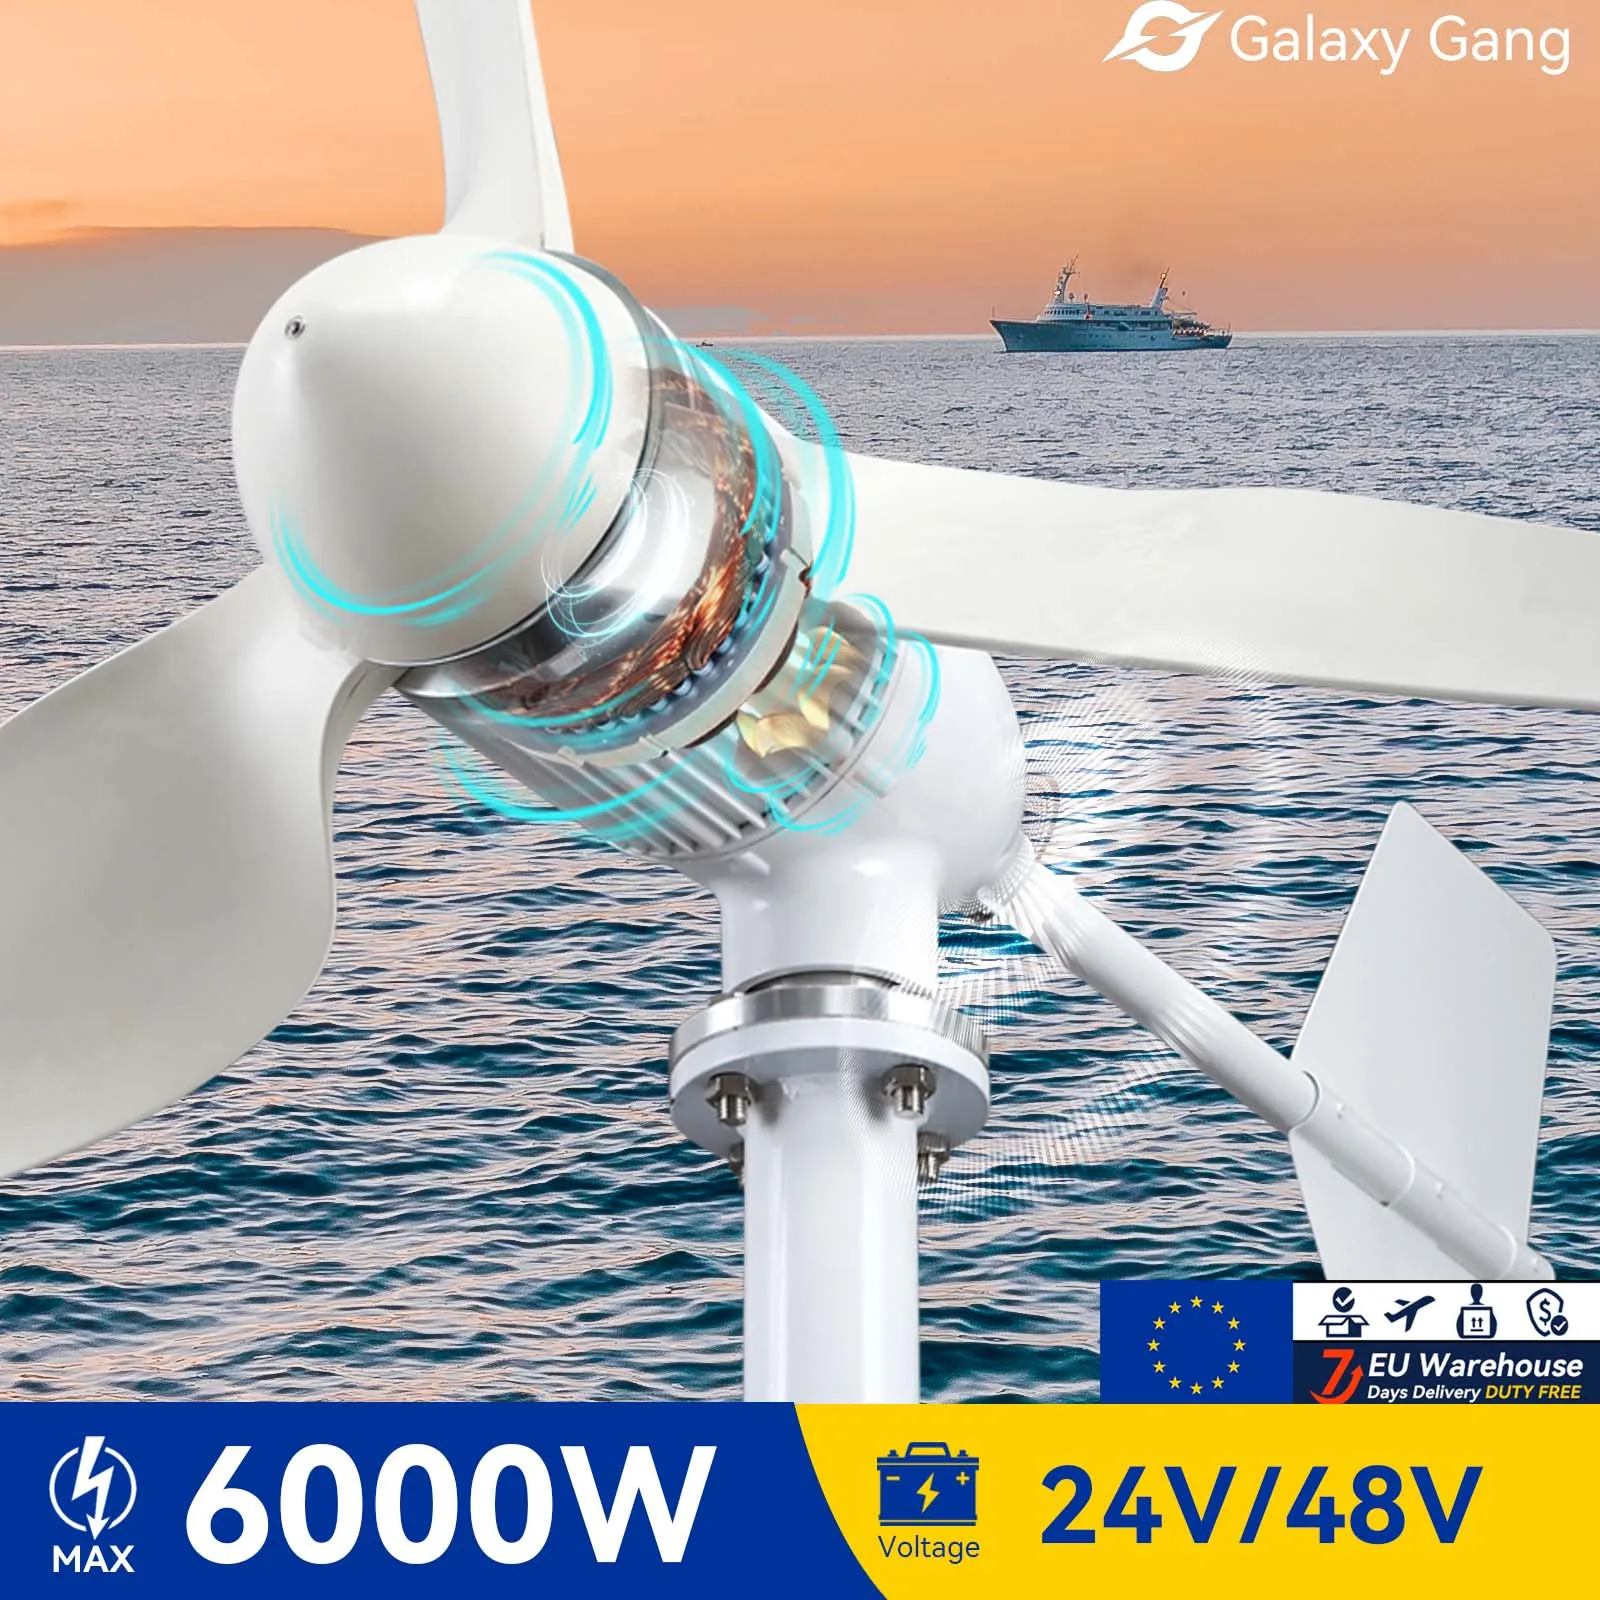 

Комплект генератора турбины Galaxy Gang 6000 Вт ветряная мельница мощность 6 кВт мощность 3 лезвия 24 в 48 в с контроллером MPPT неэлектрическая инверторная система ModelM6